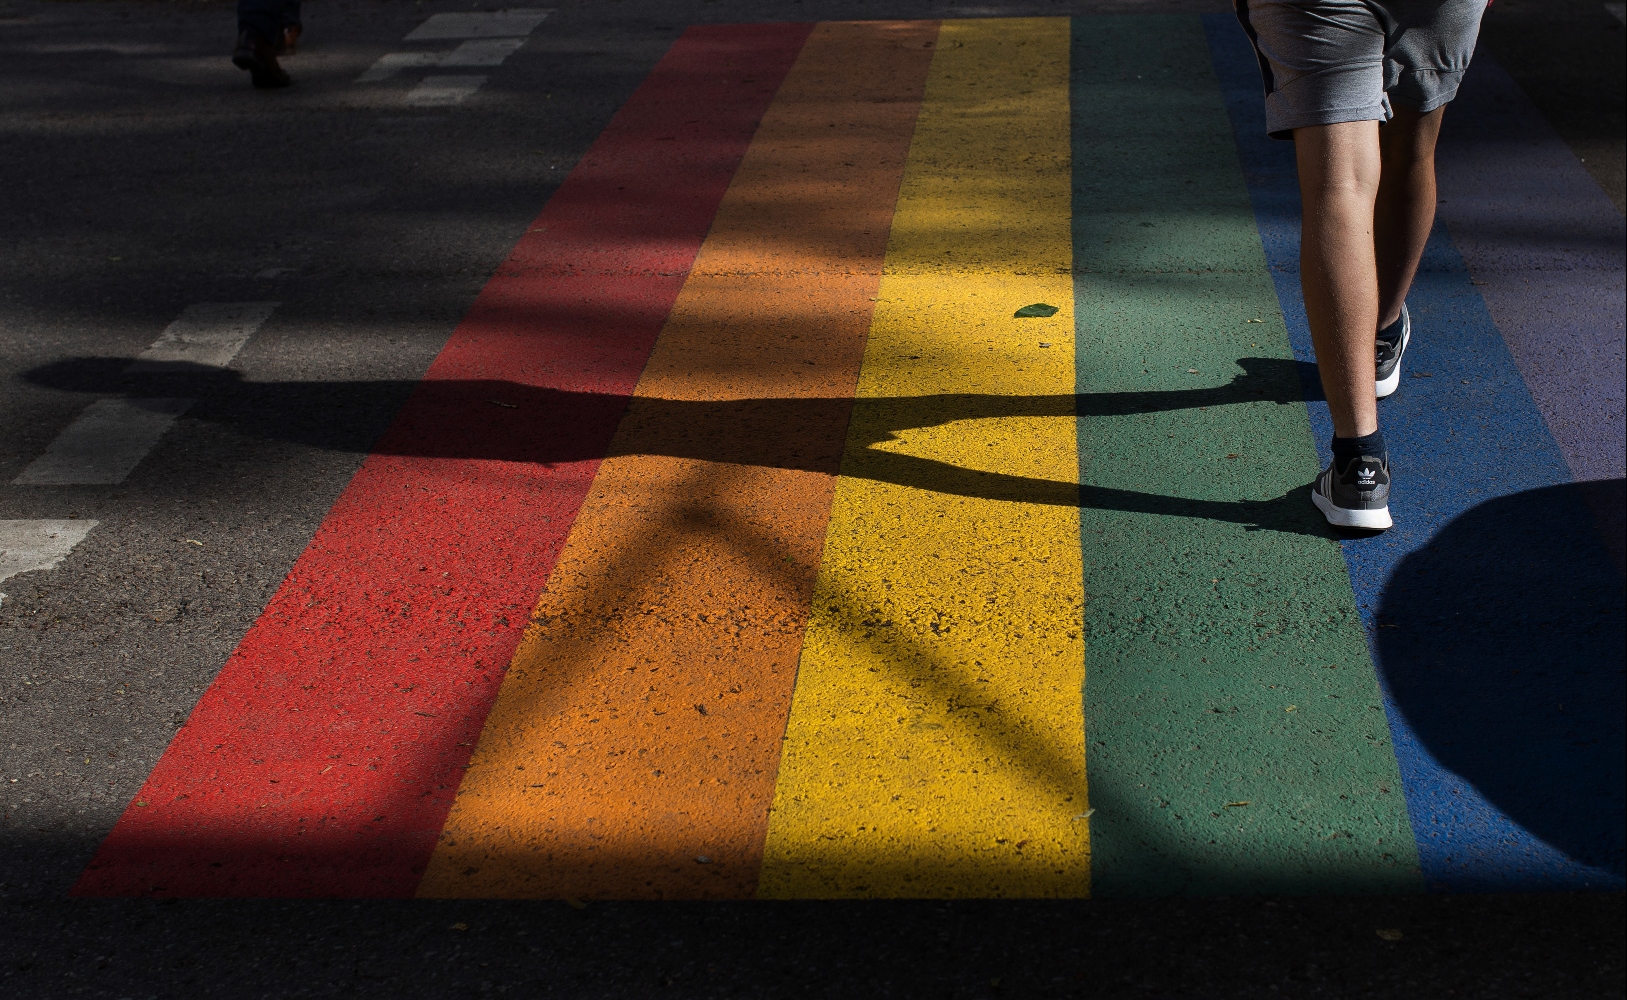 Τα περιστατικά ρατσιστικής βίας σε ΛΟΑΤΚΙ+ άτομα αυξήθηκαν σε έναν χρόνο κατά 20%